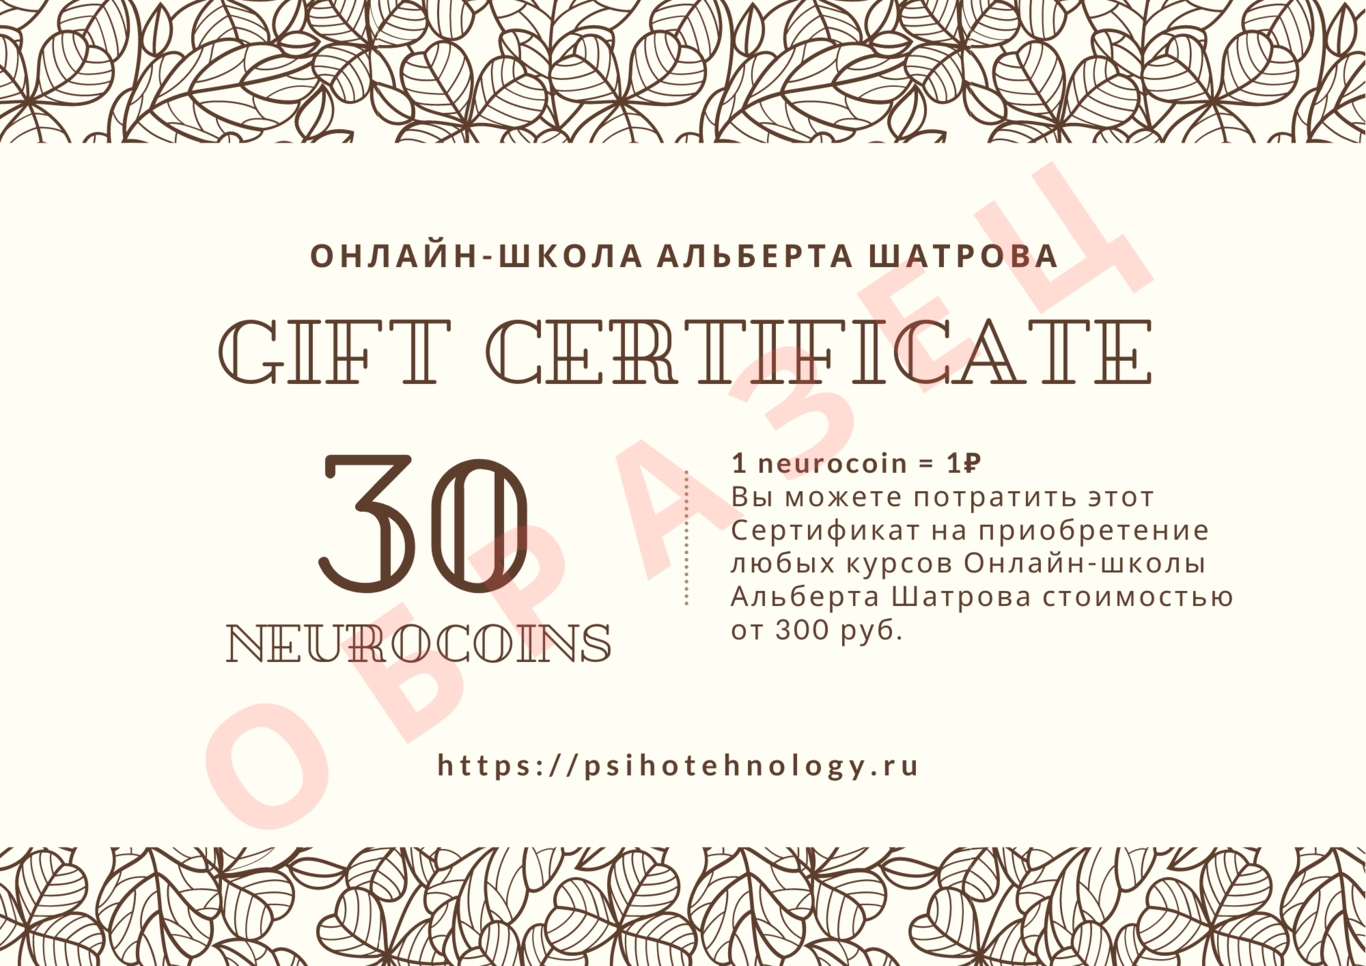 Нейрокоины - подарочные сертификаты Онлайн-школы Альберта Шатрова